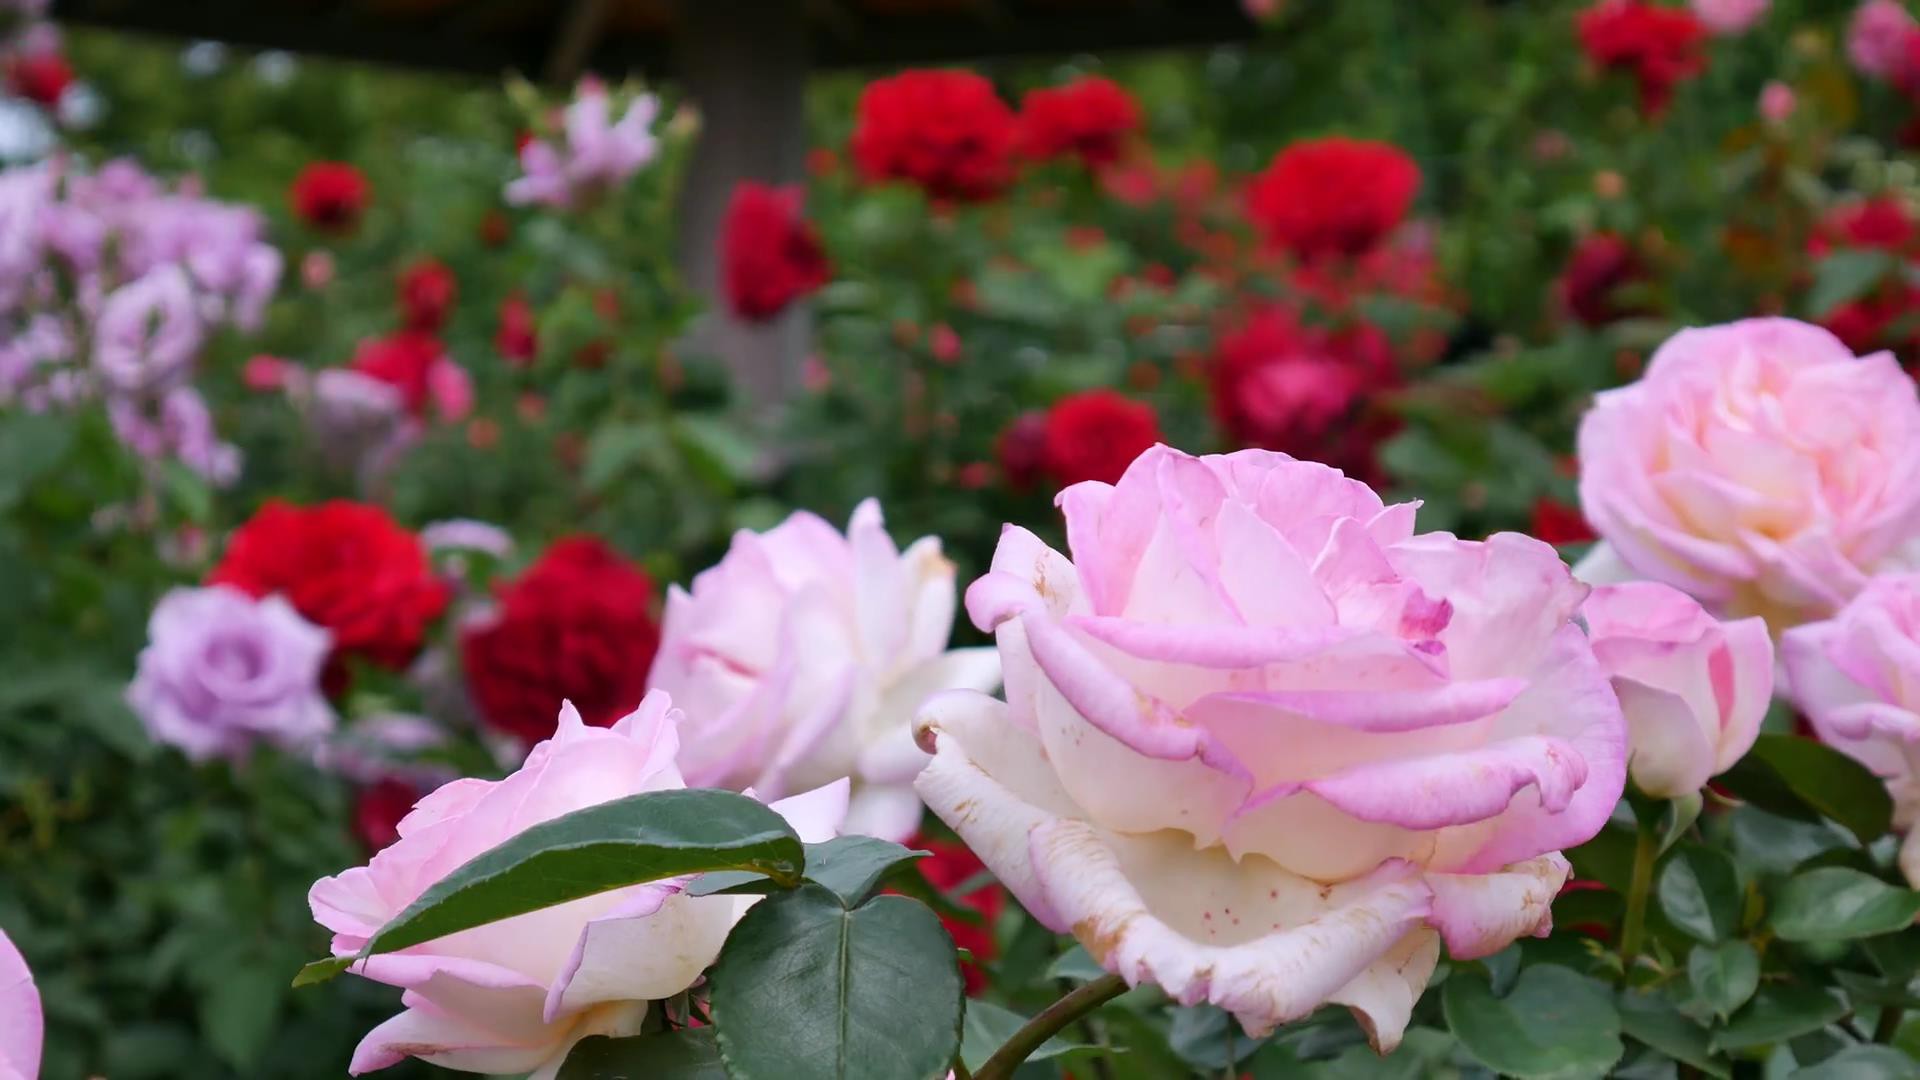 Đến thăm khu vườn trên đảo ở Nhật Bản với 2.600 cây hoa hồng rung rinh trước gió đẹp mê mẩn lòng người - Ảnh 16.